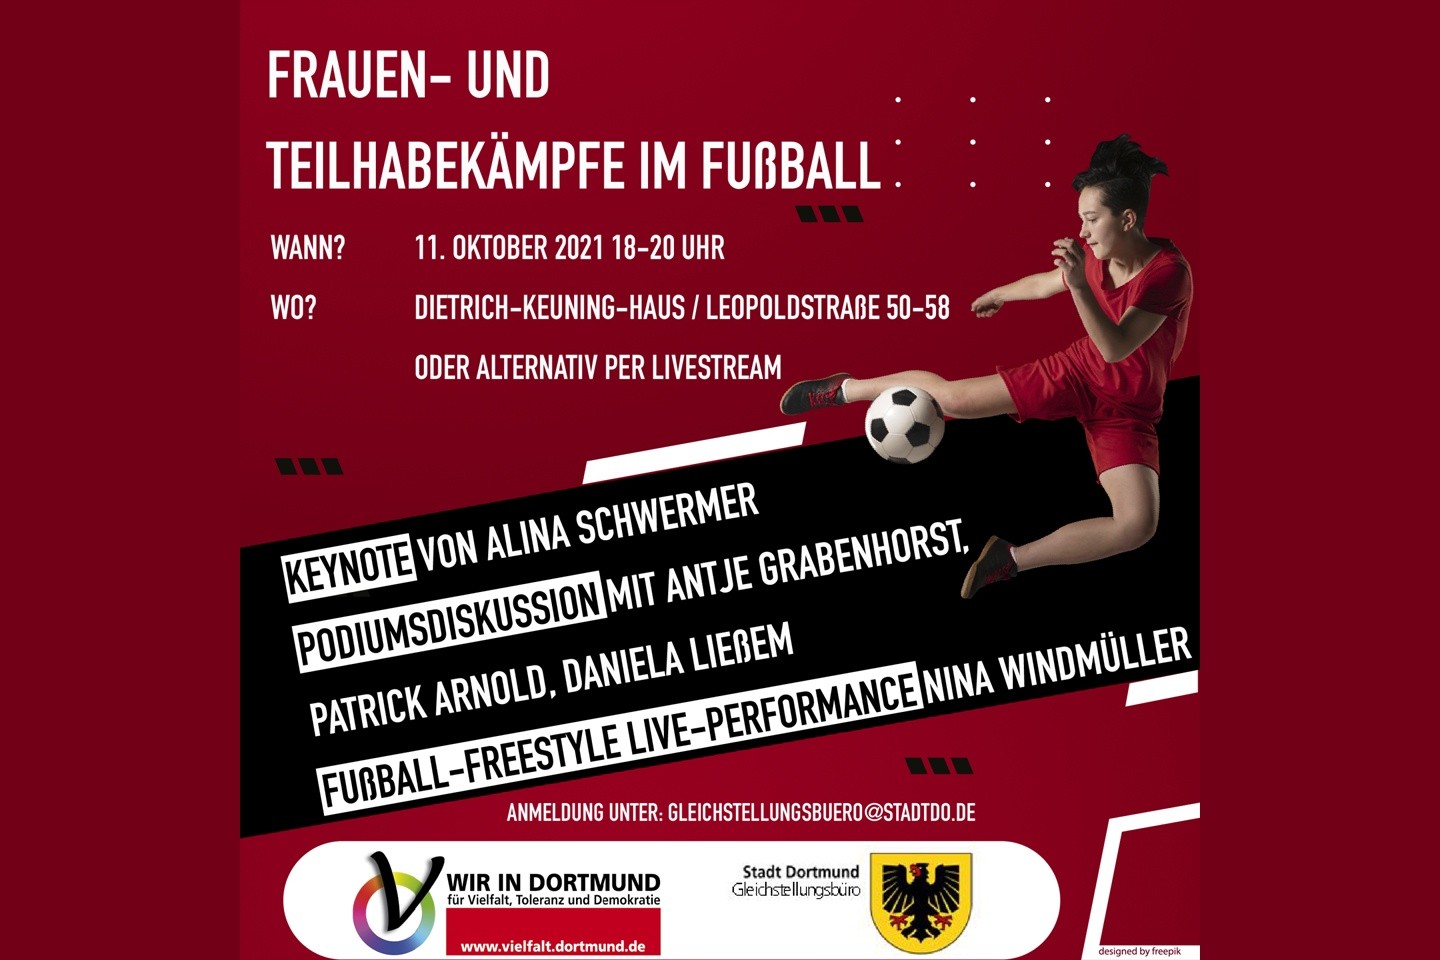 Frauen und Teilhabekämpfe im Fußball Dortmund-App